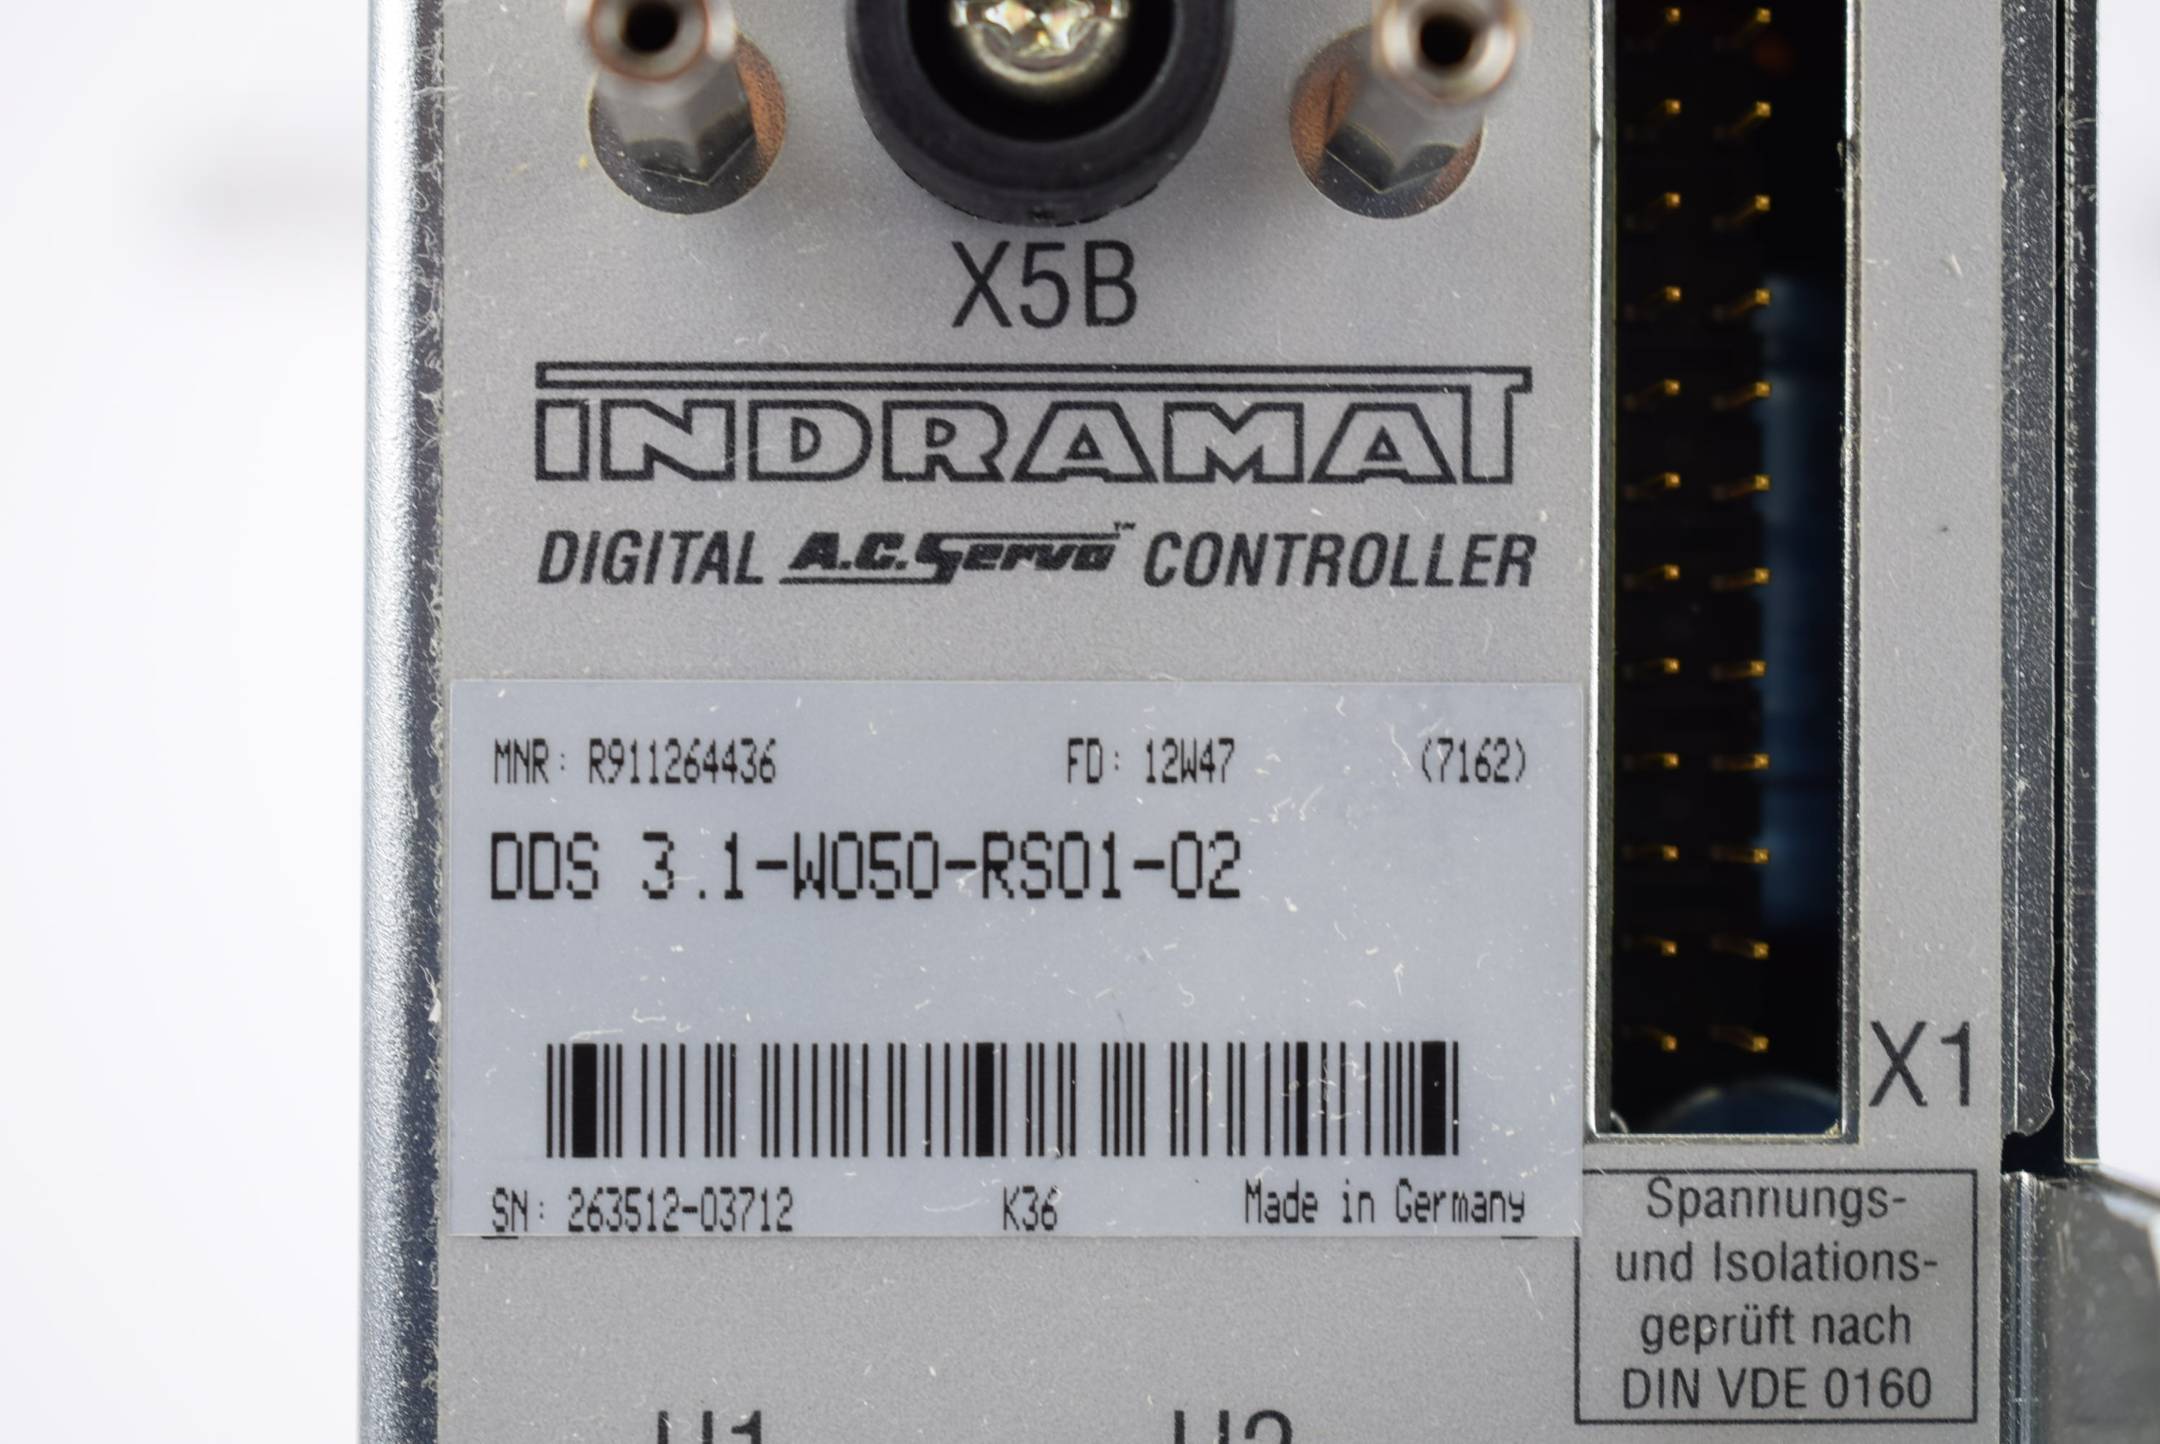 Bosch Rexroth Indramat Digital A.C. Servo controller DDS03.1-W050-RS01-02-FW
